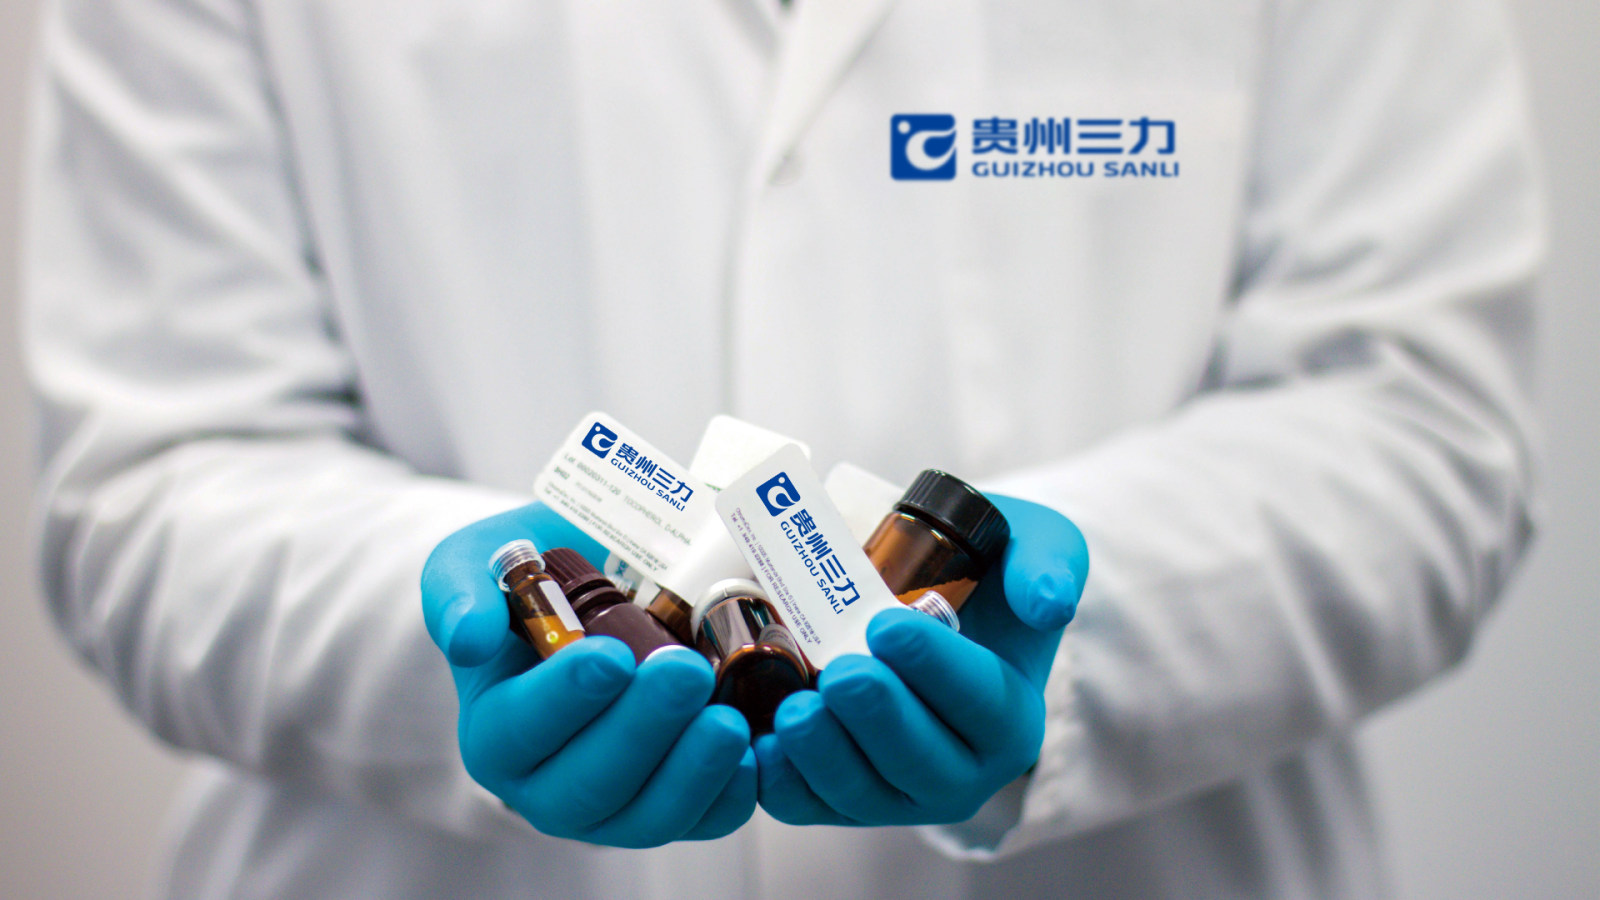 贵州三力制药品牌形象升级